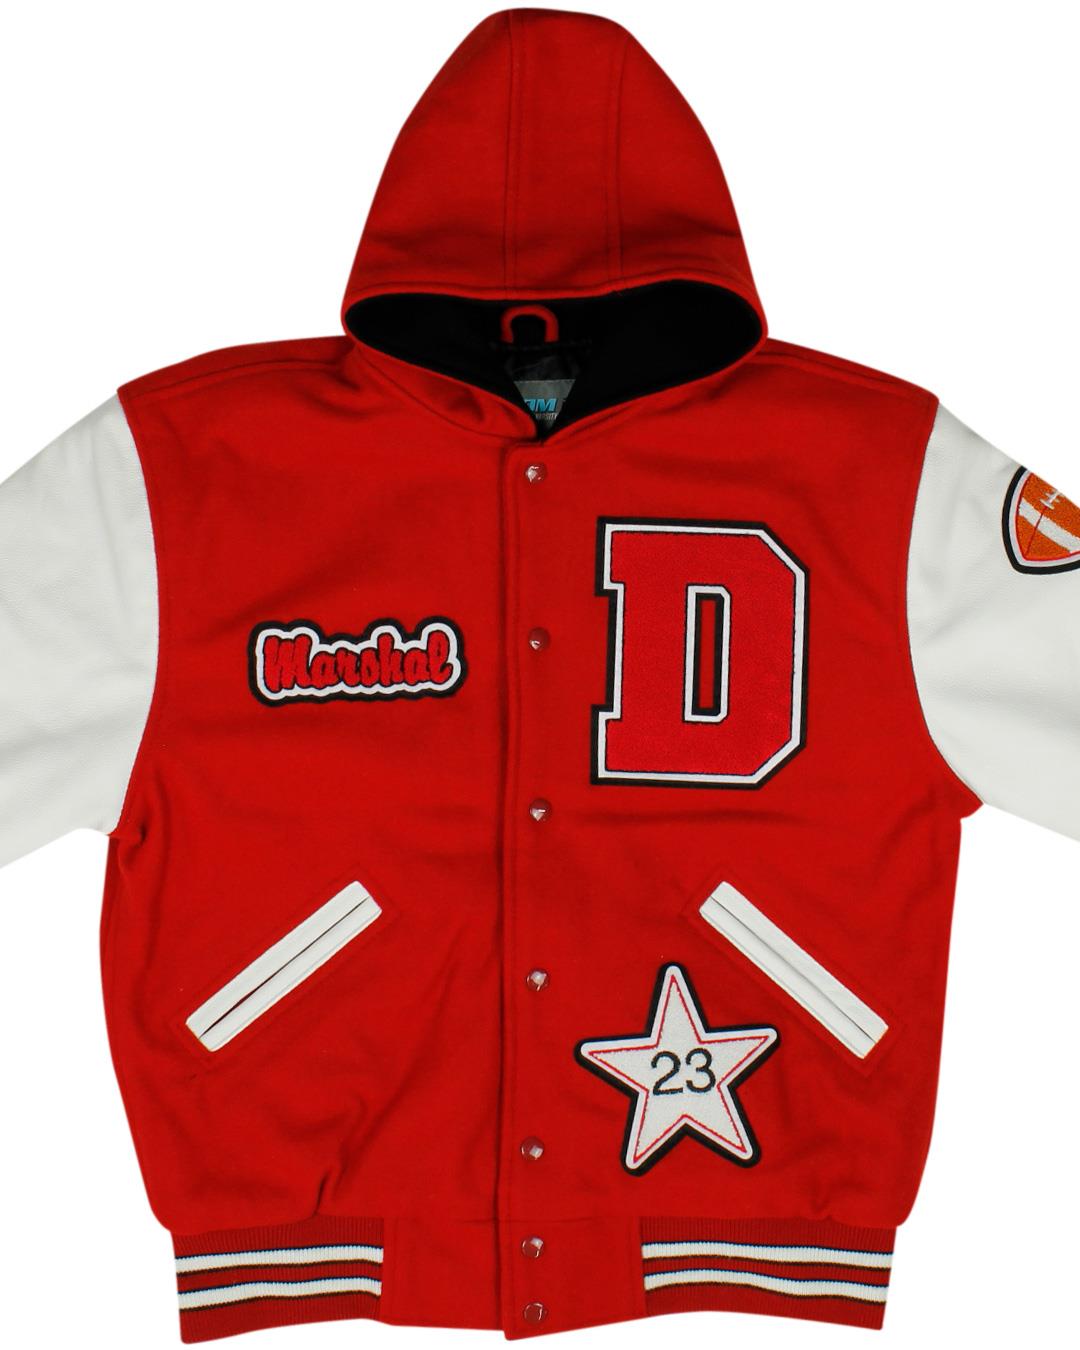 Dufur High School Varsity Jacket, Dufur OR - Front